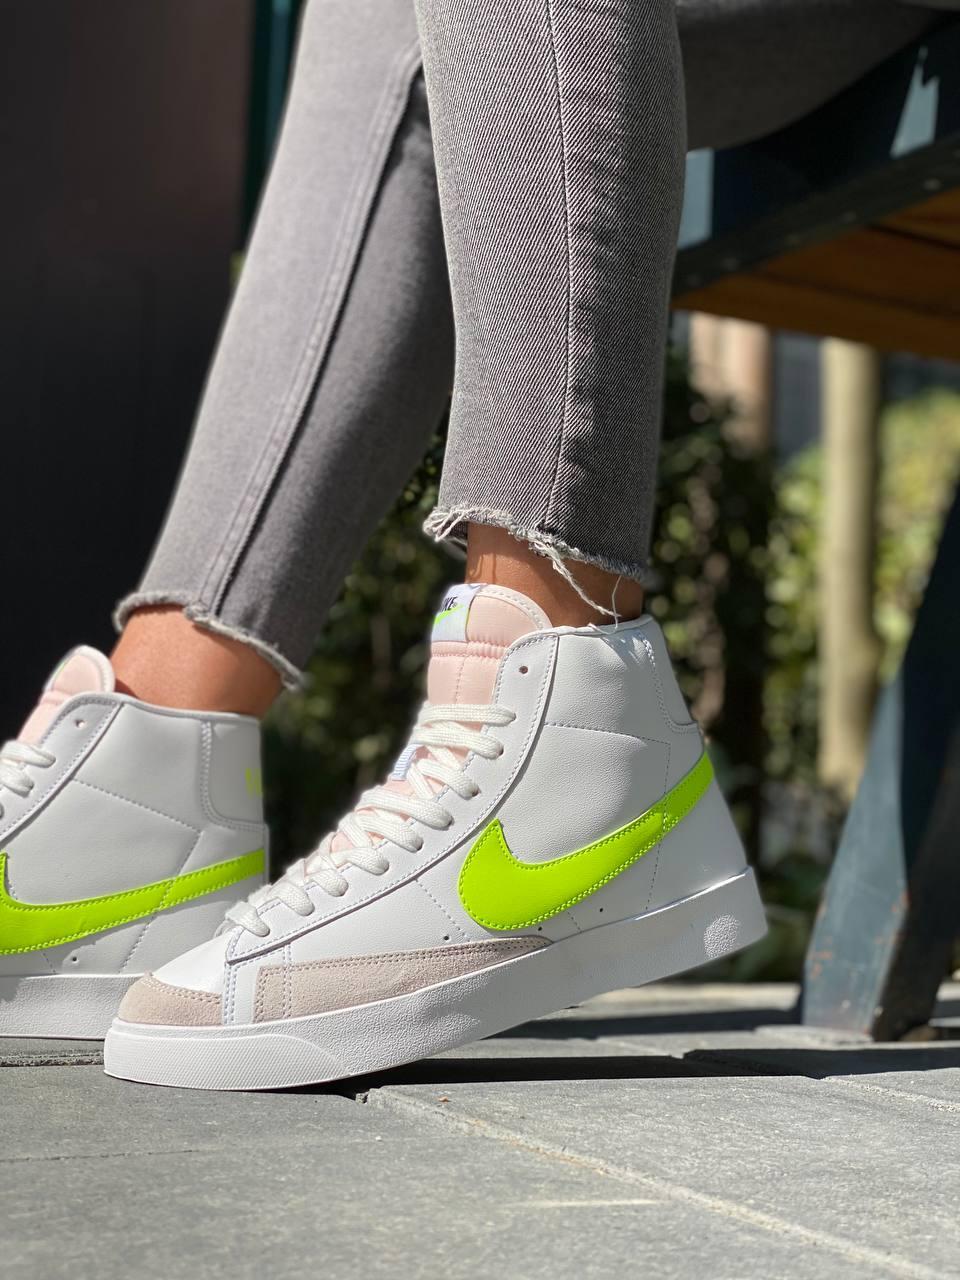 Жіночі кросівки Nike Blazer Mid 77 Vintage White Neon Green | Найк Блейзер